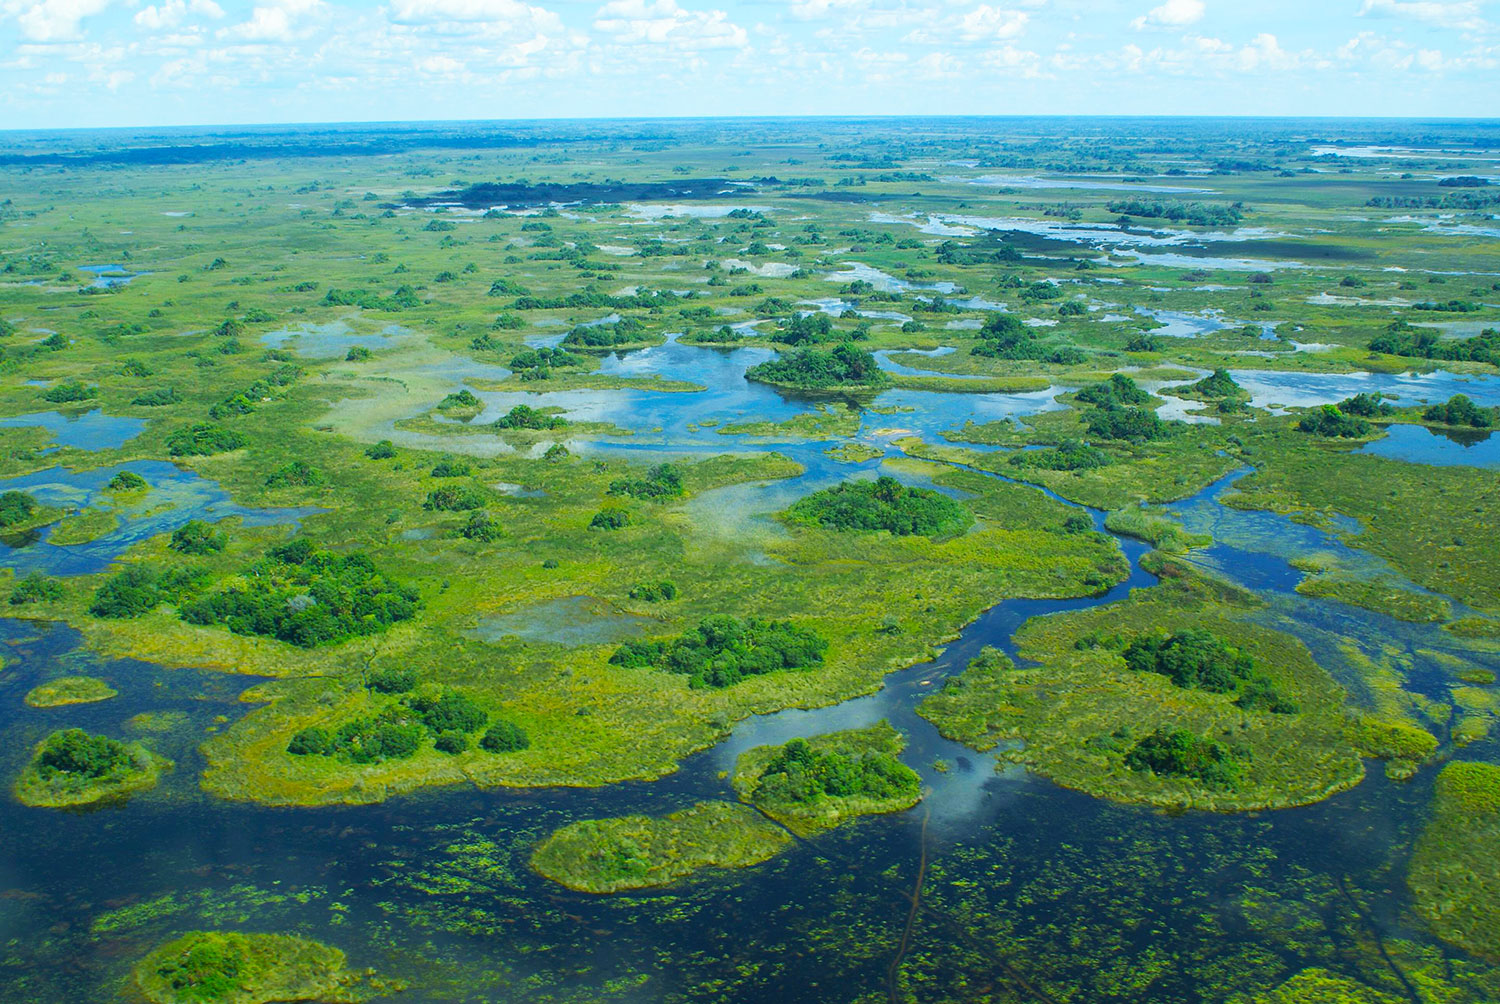 Delta del Okavango Fotografía de Justin Hall para Wikimedia